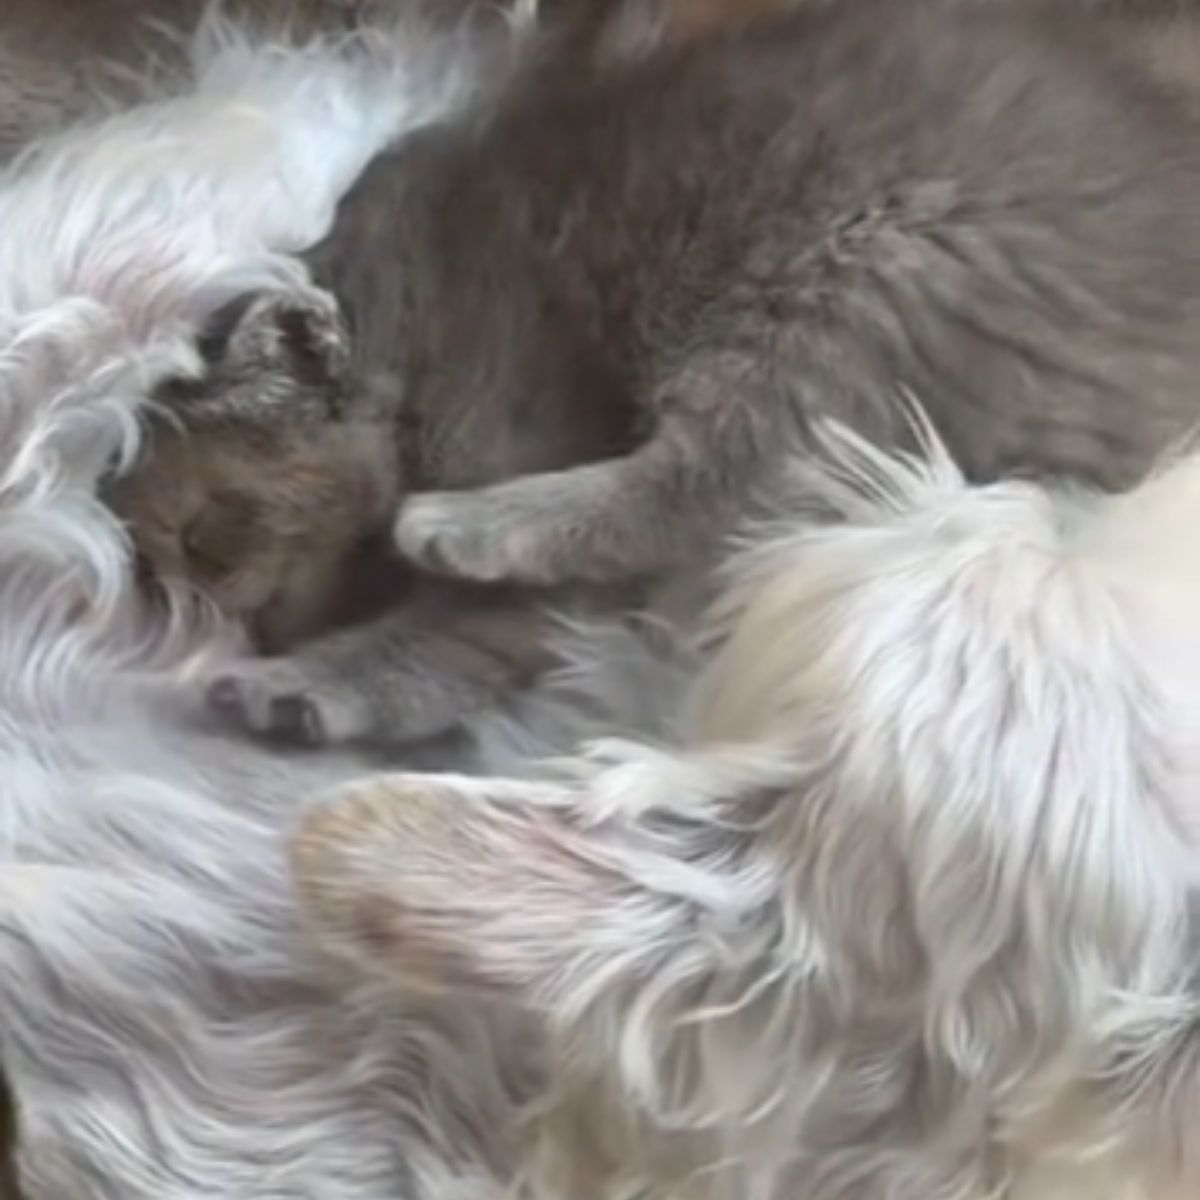 dog and kitten sleeping